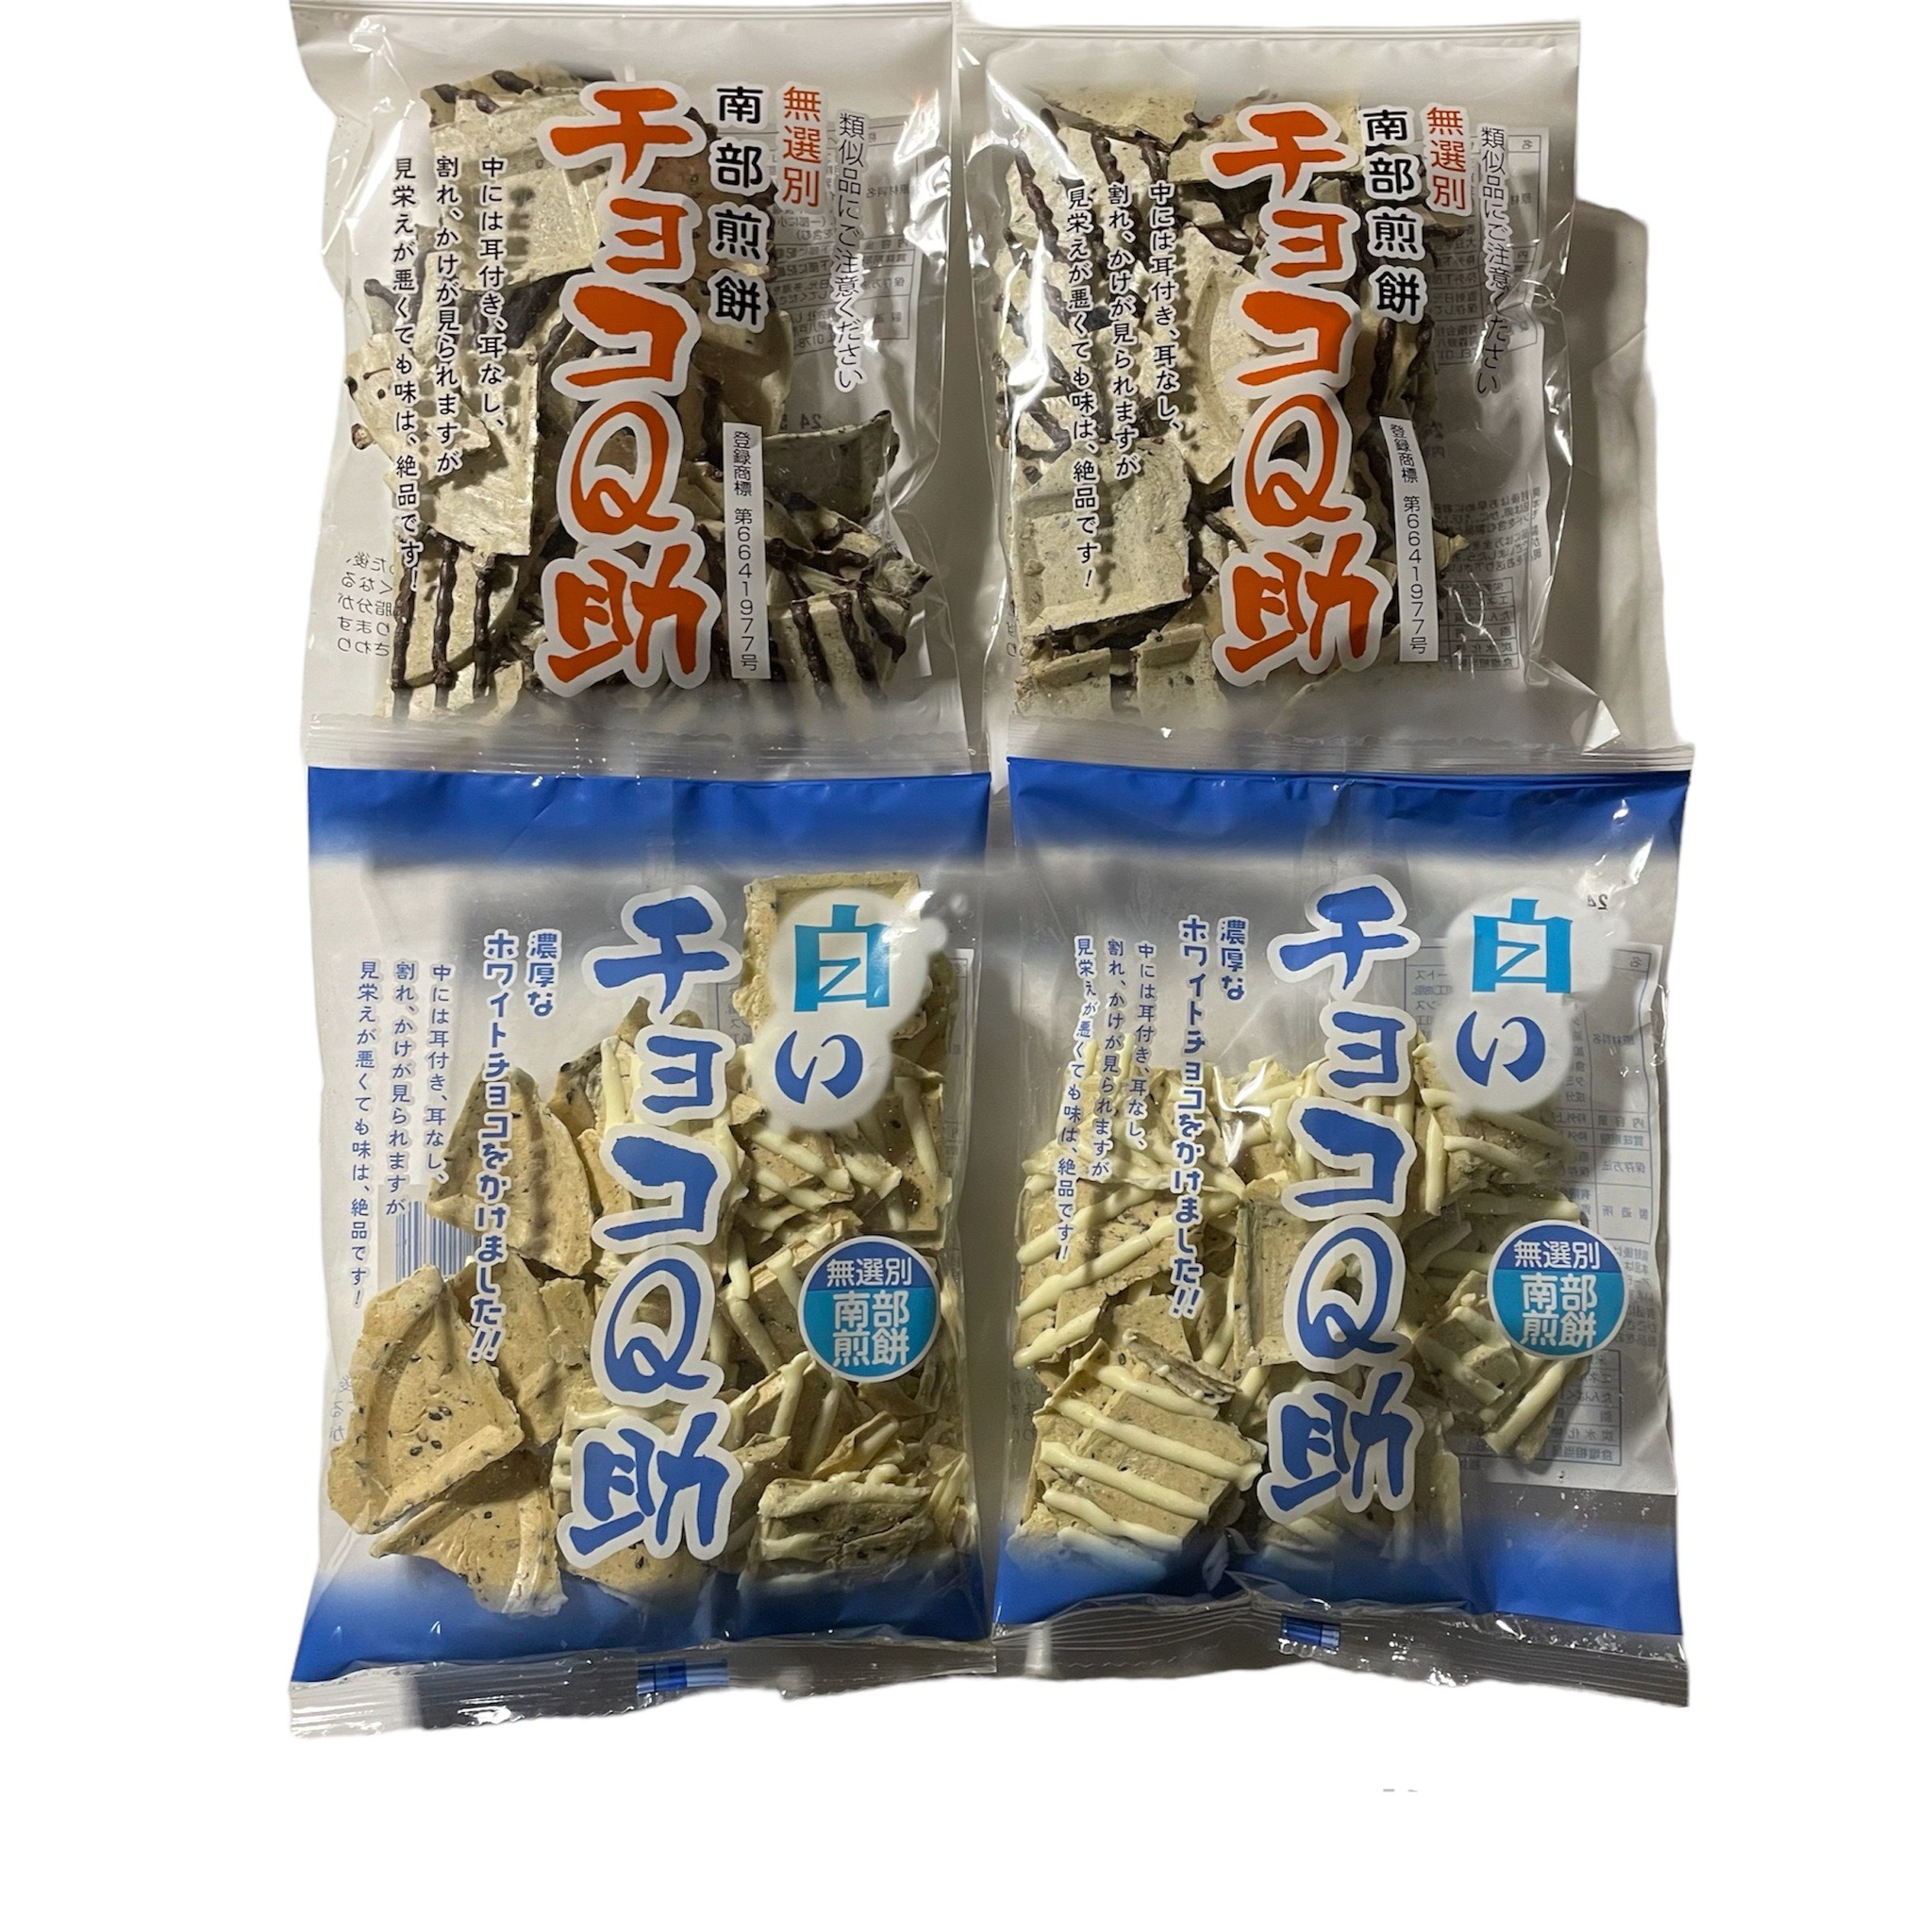  юг часть . моти шоко Q. белый шоко Q. еда . сравнение 4 пакет комплект шоколад юг часть рисовые крекеры шоко q Aomori . земля производство 